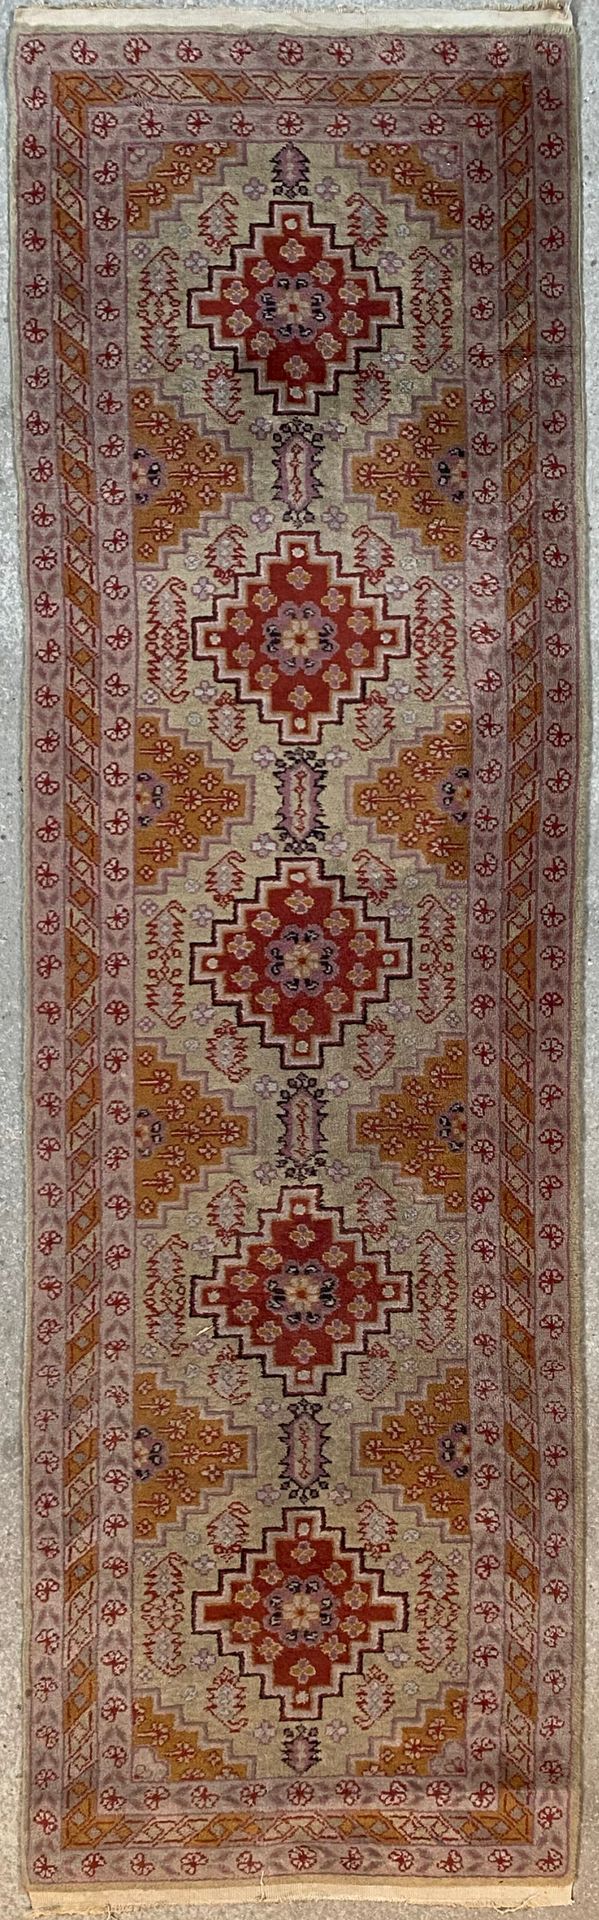 Null 画廊地毯，奶油色背景上有五个奖章，三层边框有几何和花卉图案

247 x 70 cm